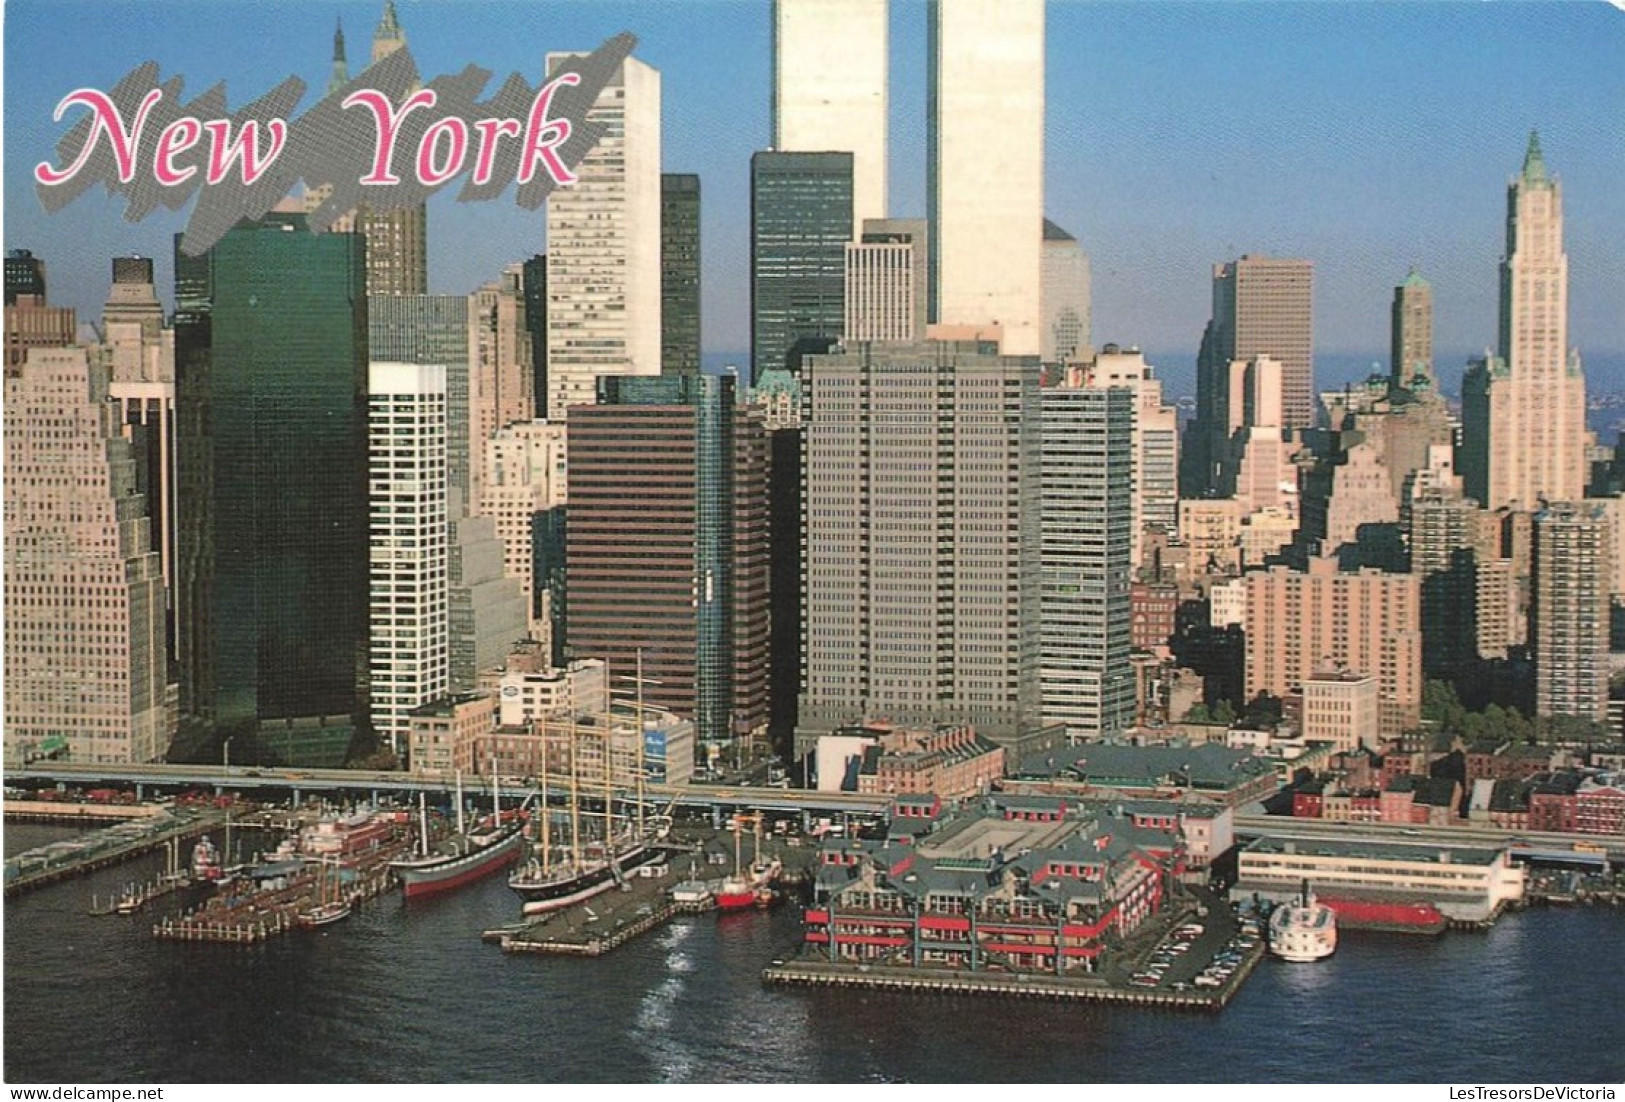 ETATS UNIS - New York - Vue Sur South Street Saport  - Colorisé - Carte Postale - Andere Monumente & Gebäude